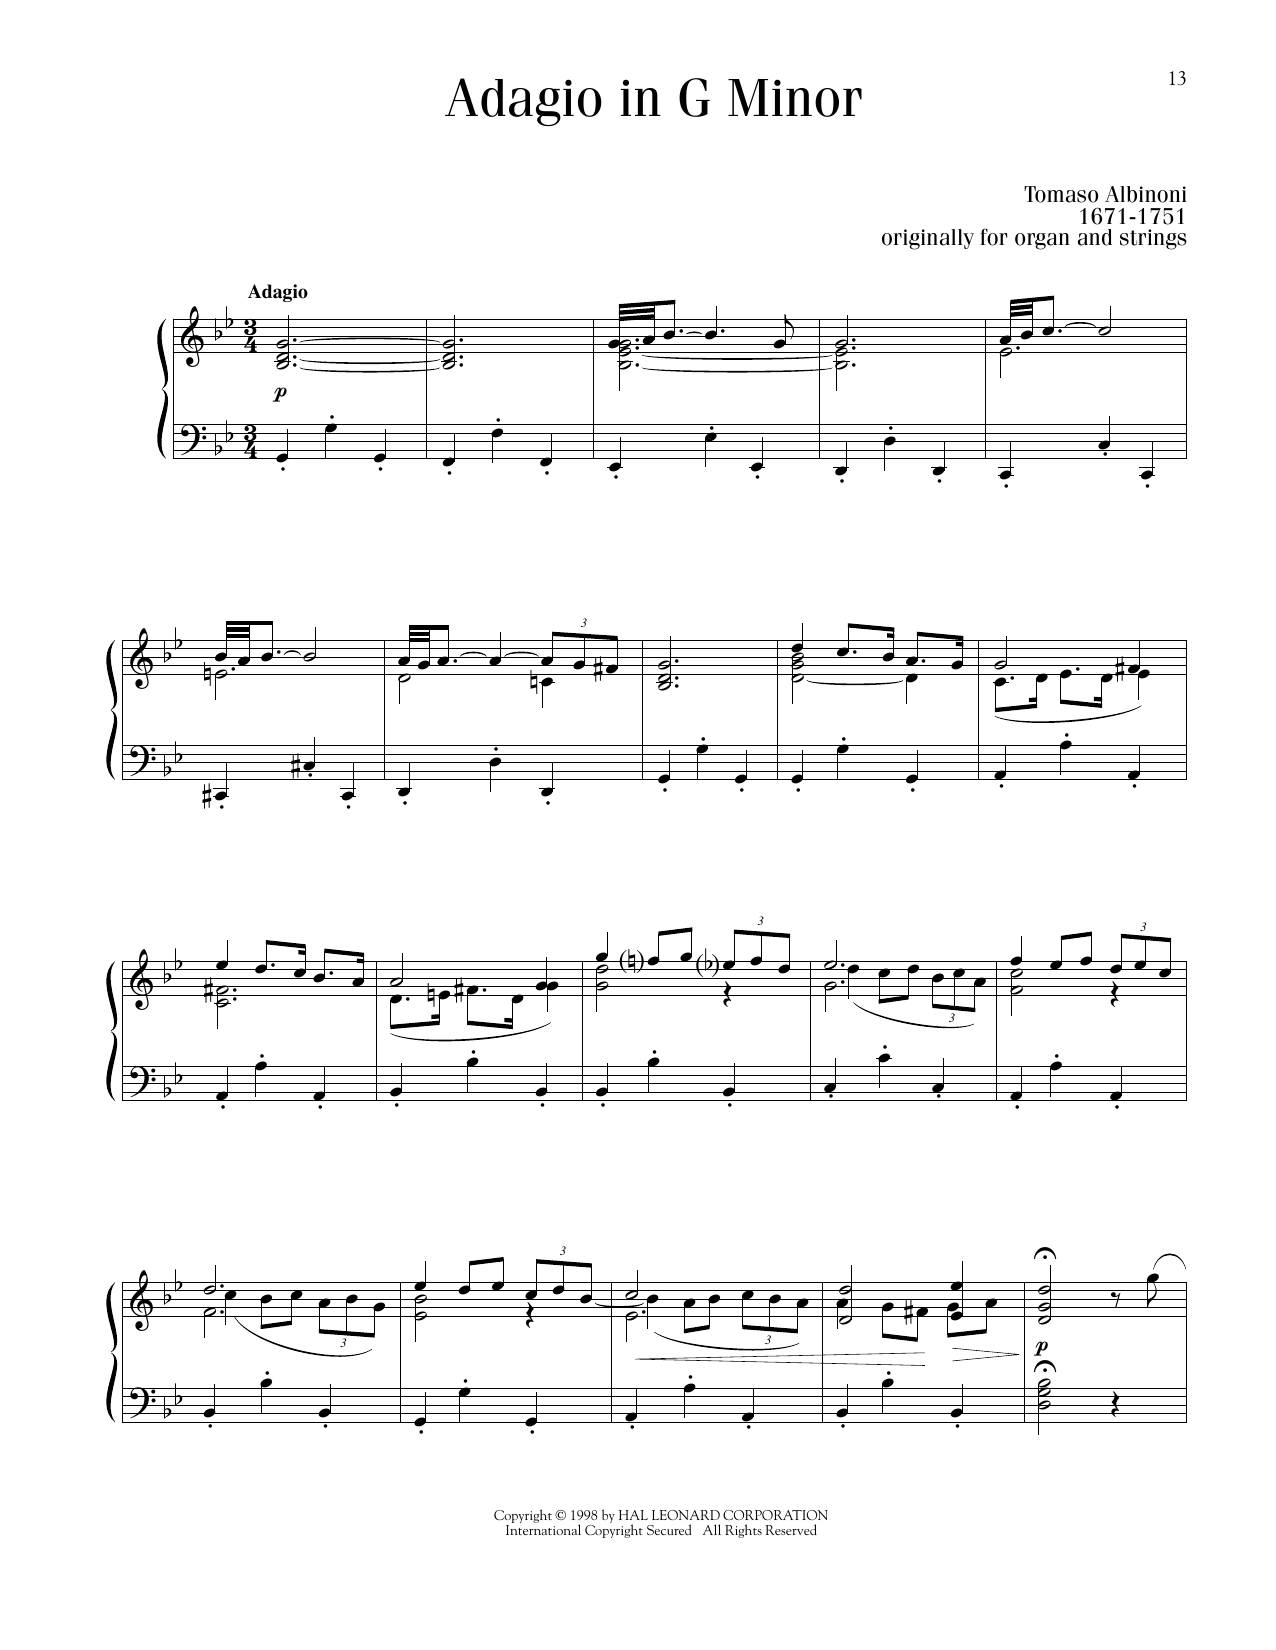 Tomaso Albinoni Adagio in G Minor sheet music notes printable PDF score